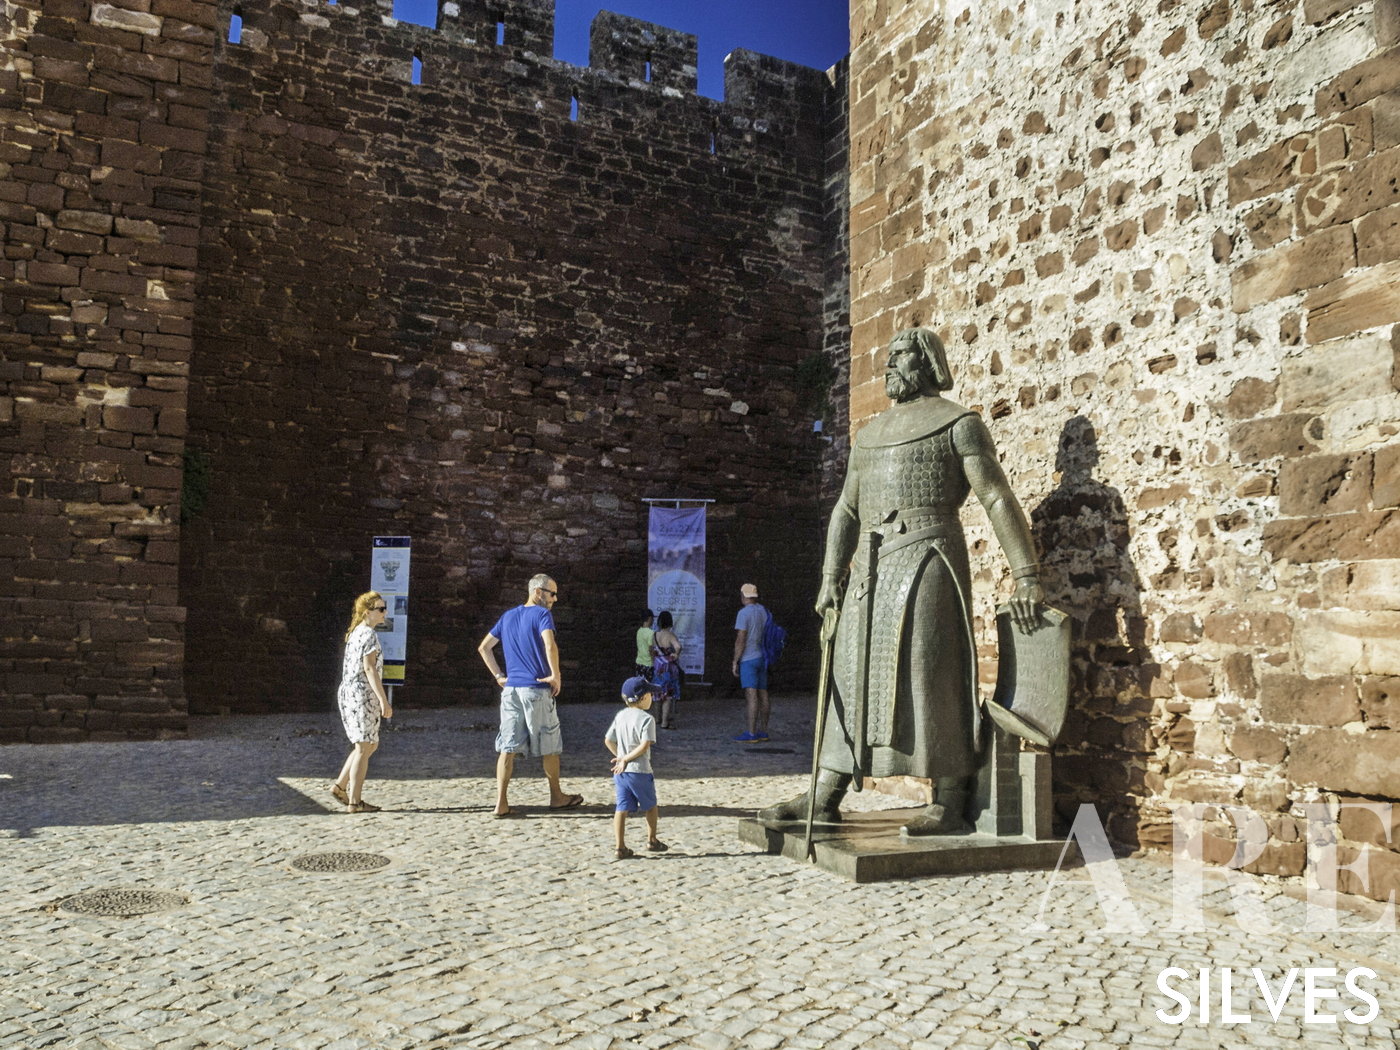 Entrada do Castelo de Silves com a Estátua do Rei D. Sancho I